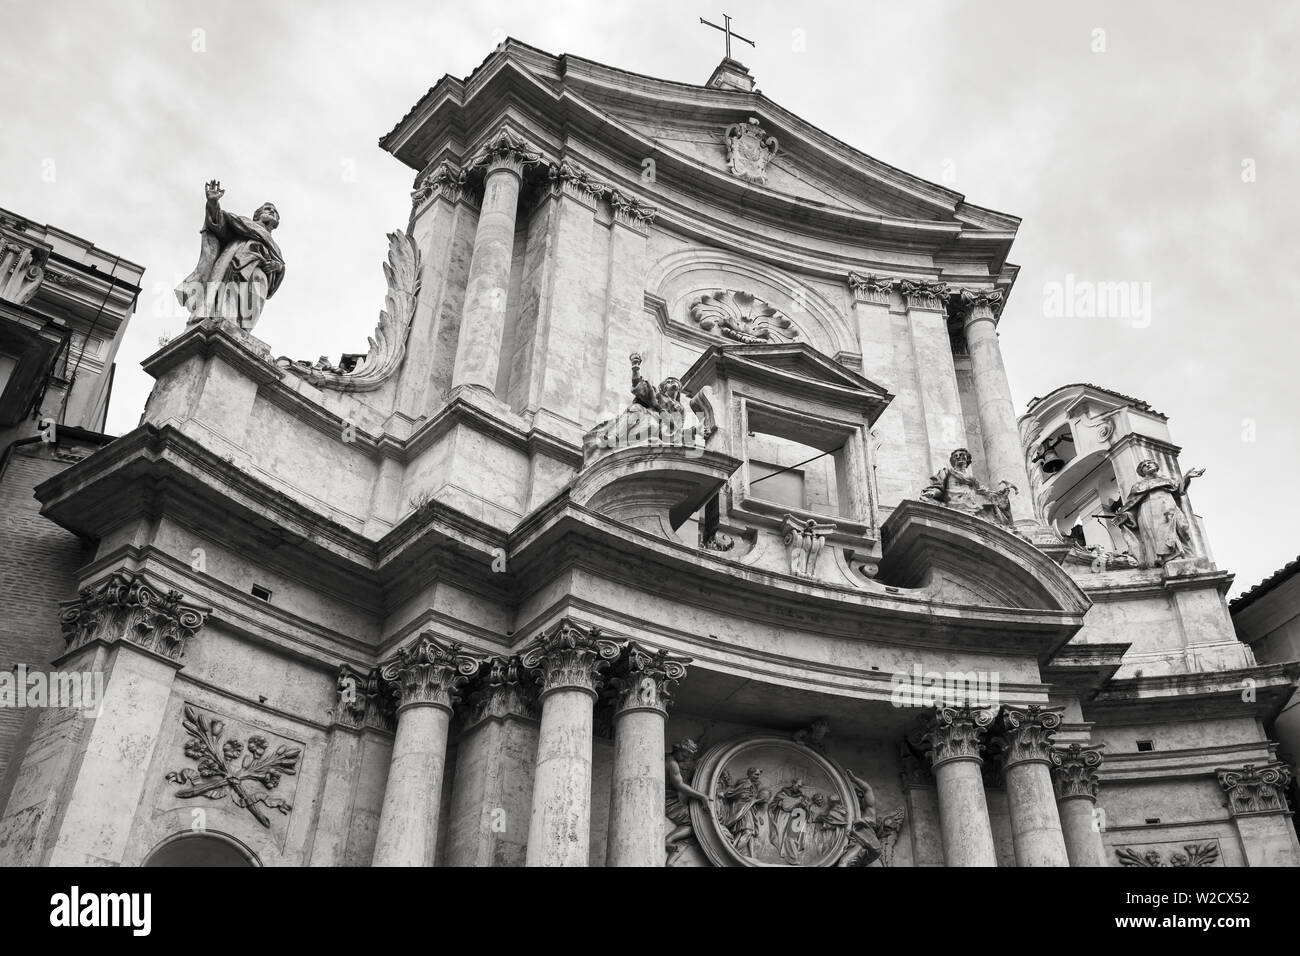 Rom, Italien, 7. August 2015: Die römische Architektur. Antike römische Kathedrale Fassade. Vintage stilisierte Sepia getont Schwarzweiß-Foto Stockfoto